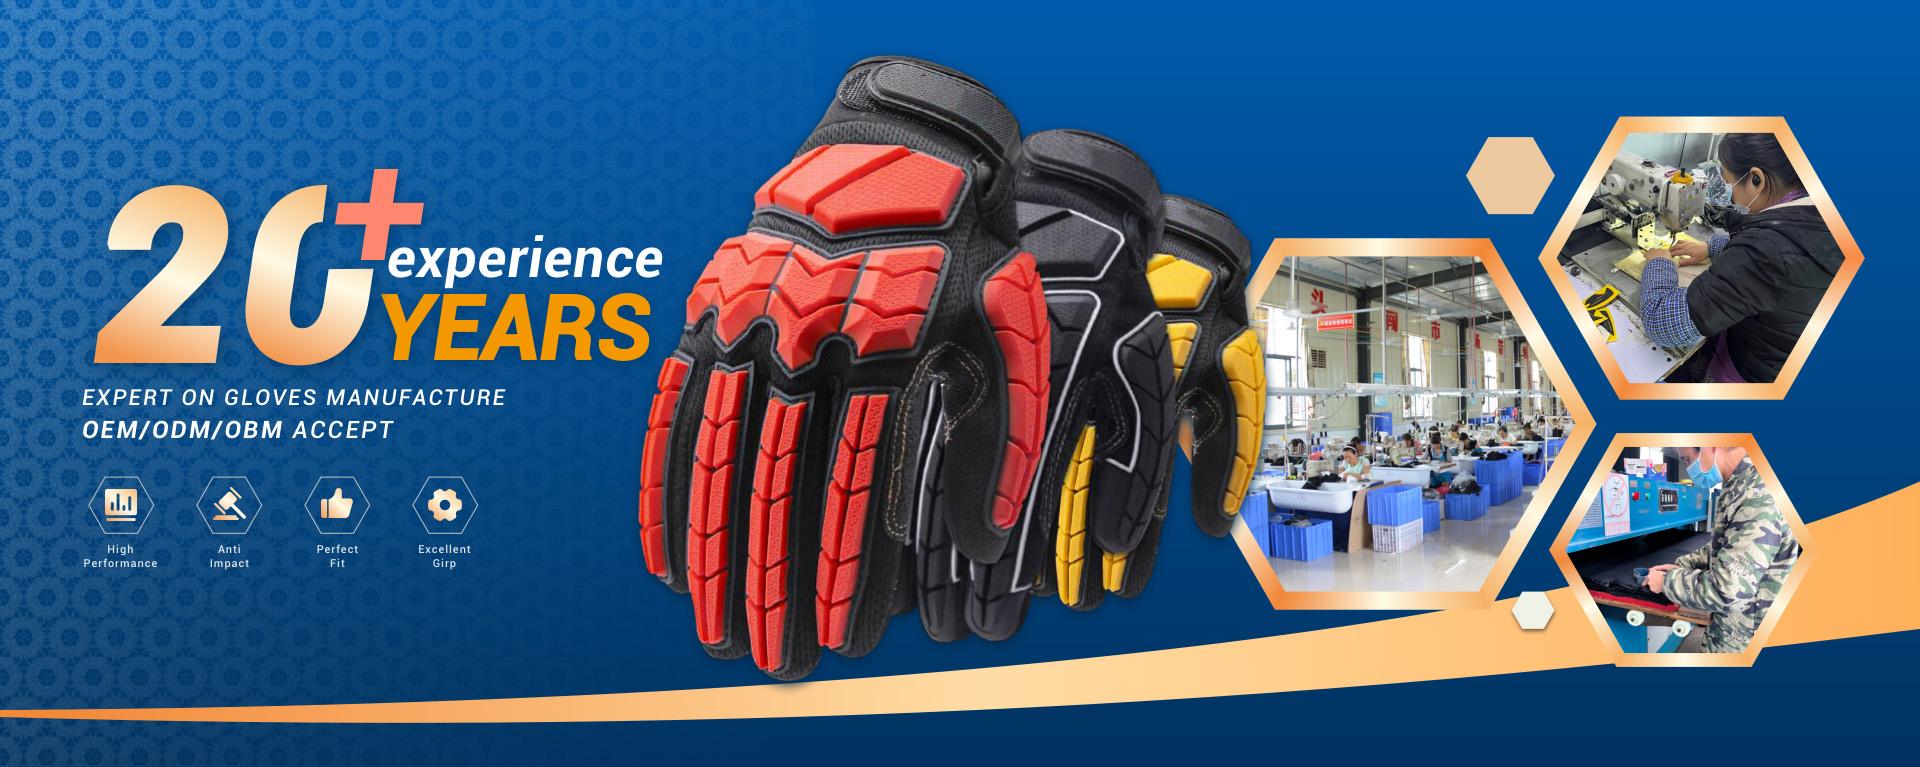 professional gloves manufacturer